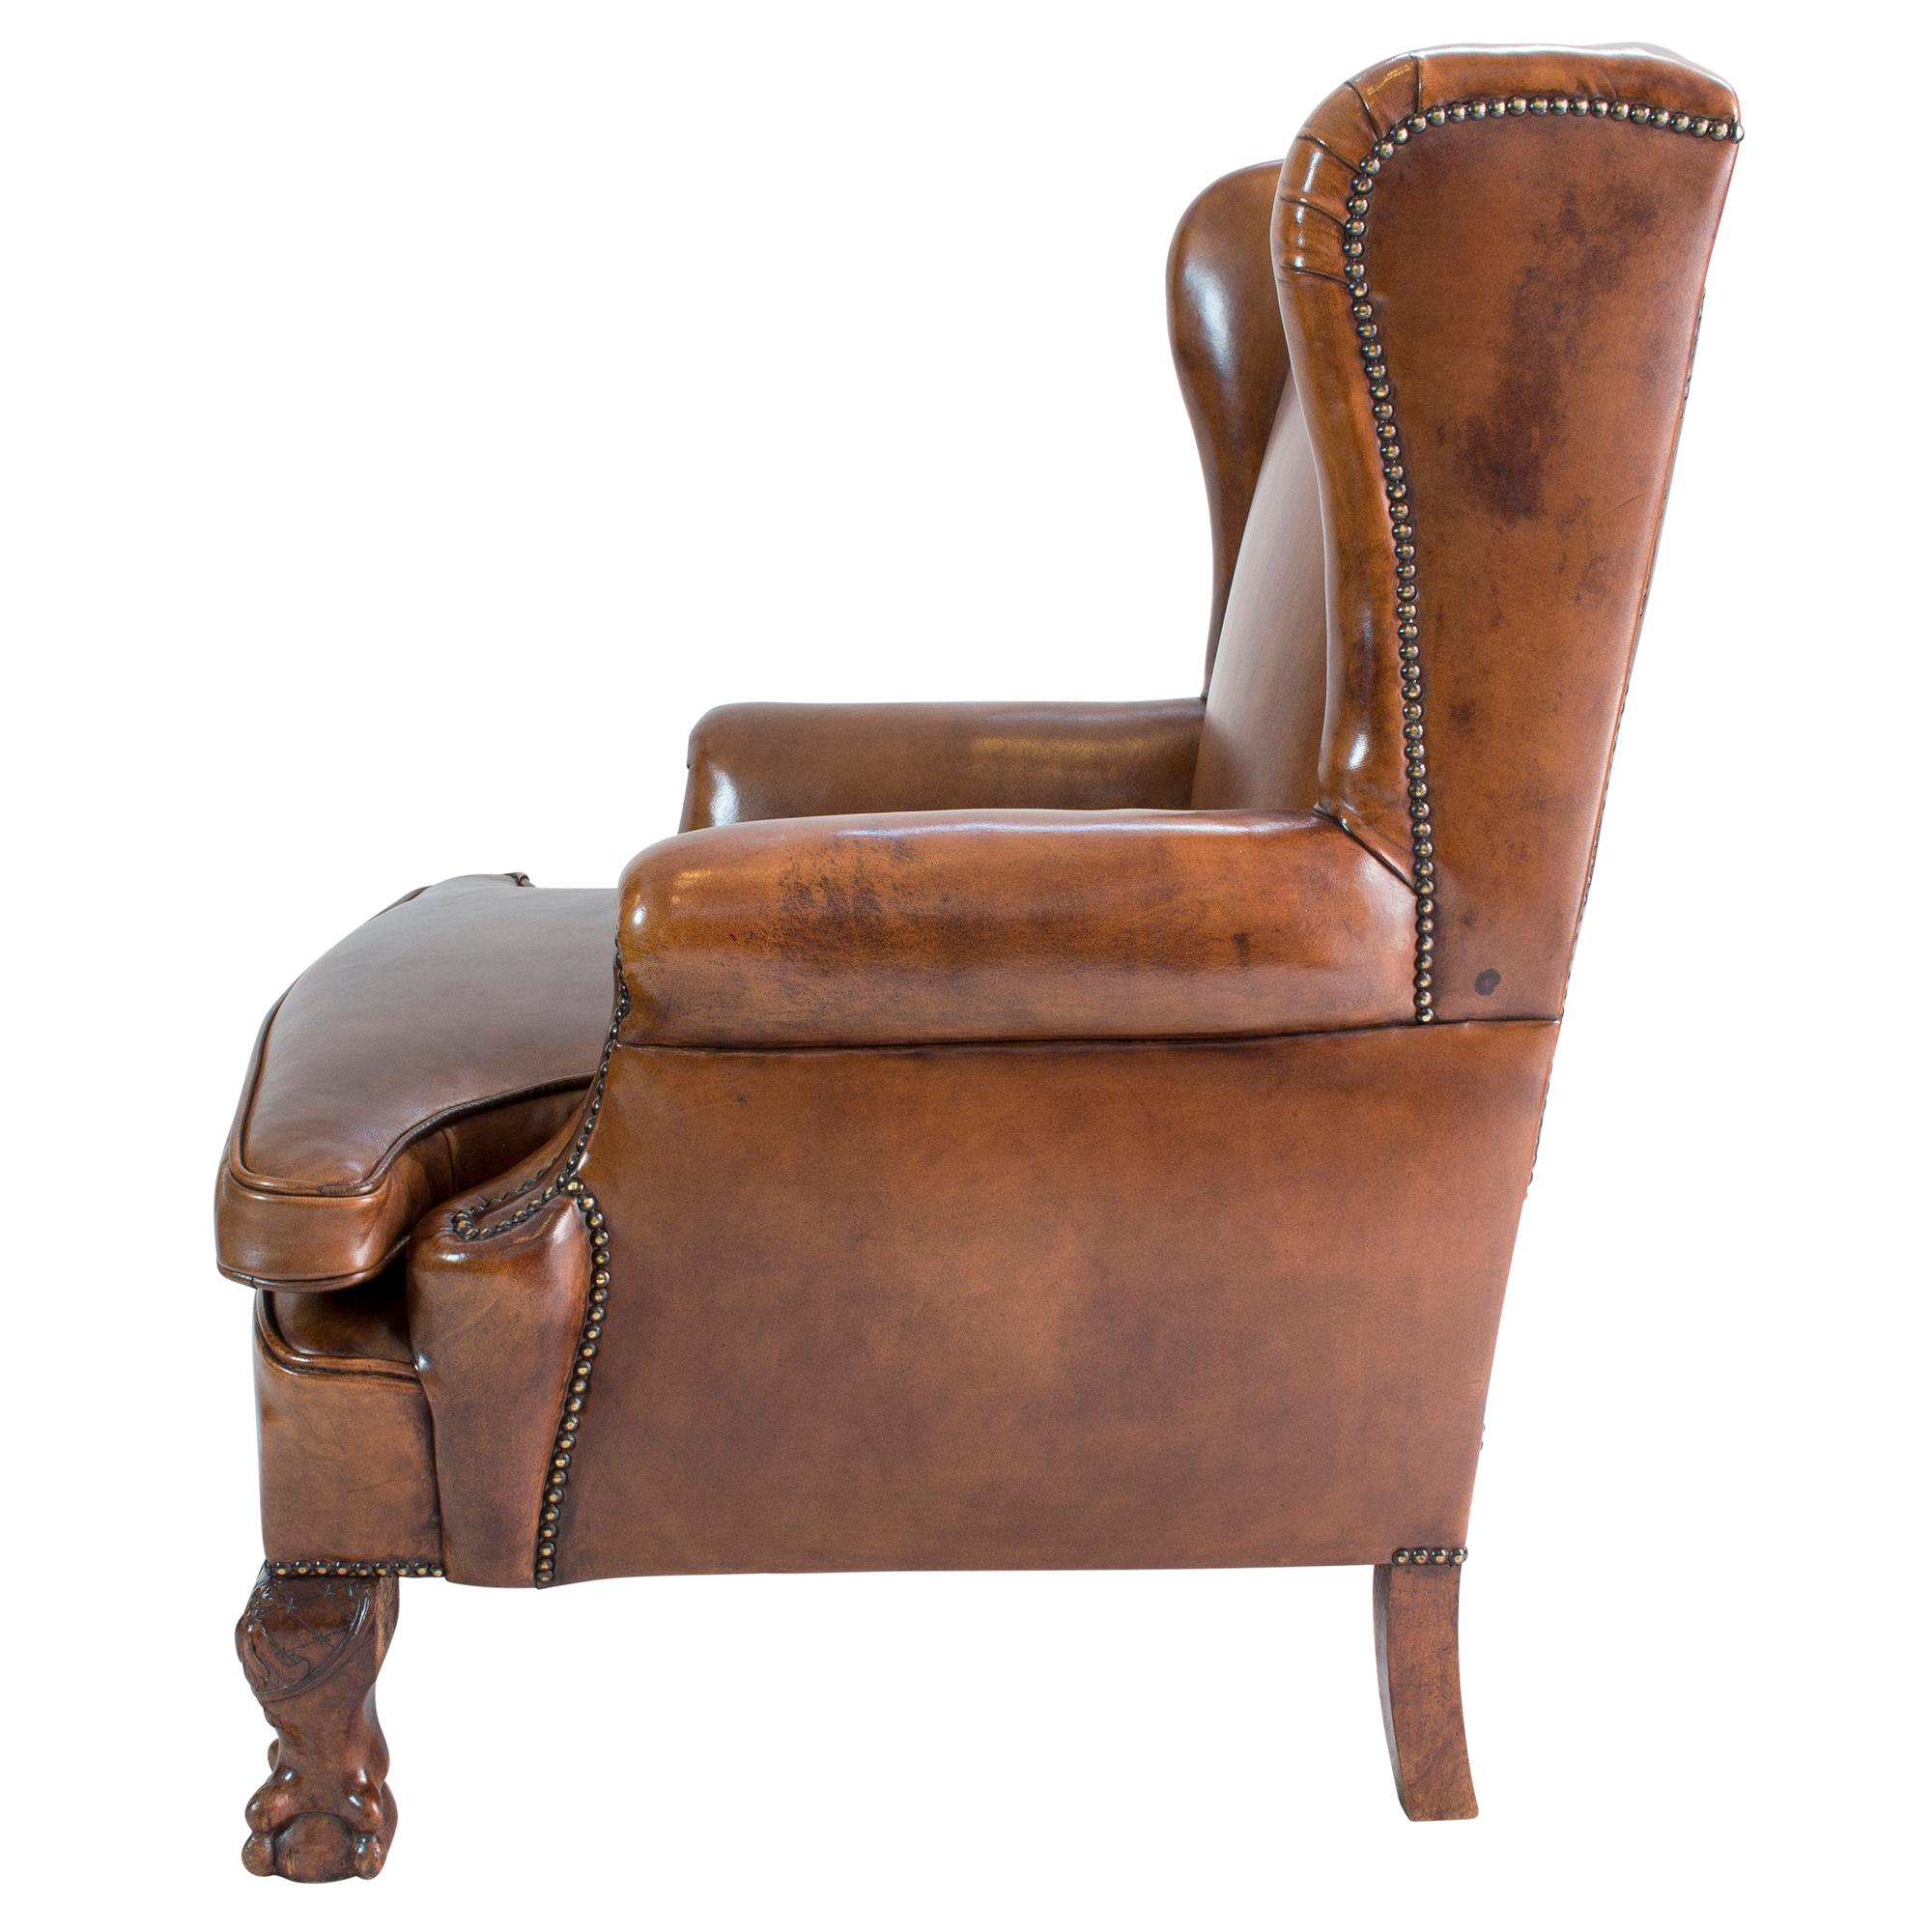 Dieser Art-Déco-Sessel mit einem Originalgestell aus Buchenholz wurde neu mit handpatiniertem Schafsleder bezogen.
Sehr komfortabel und extrem robust.

Maße: Sitzhöhe 45 cm.